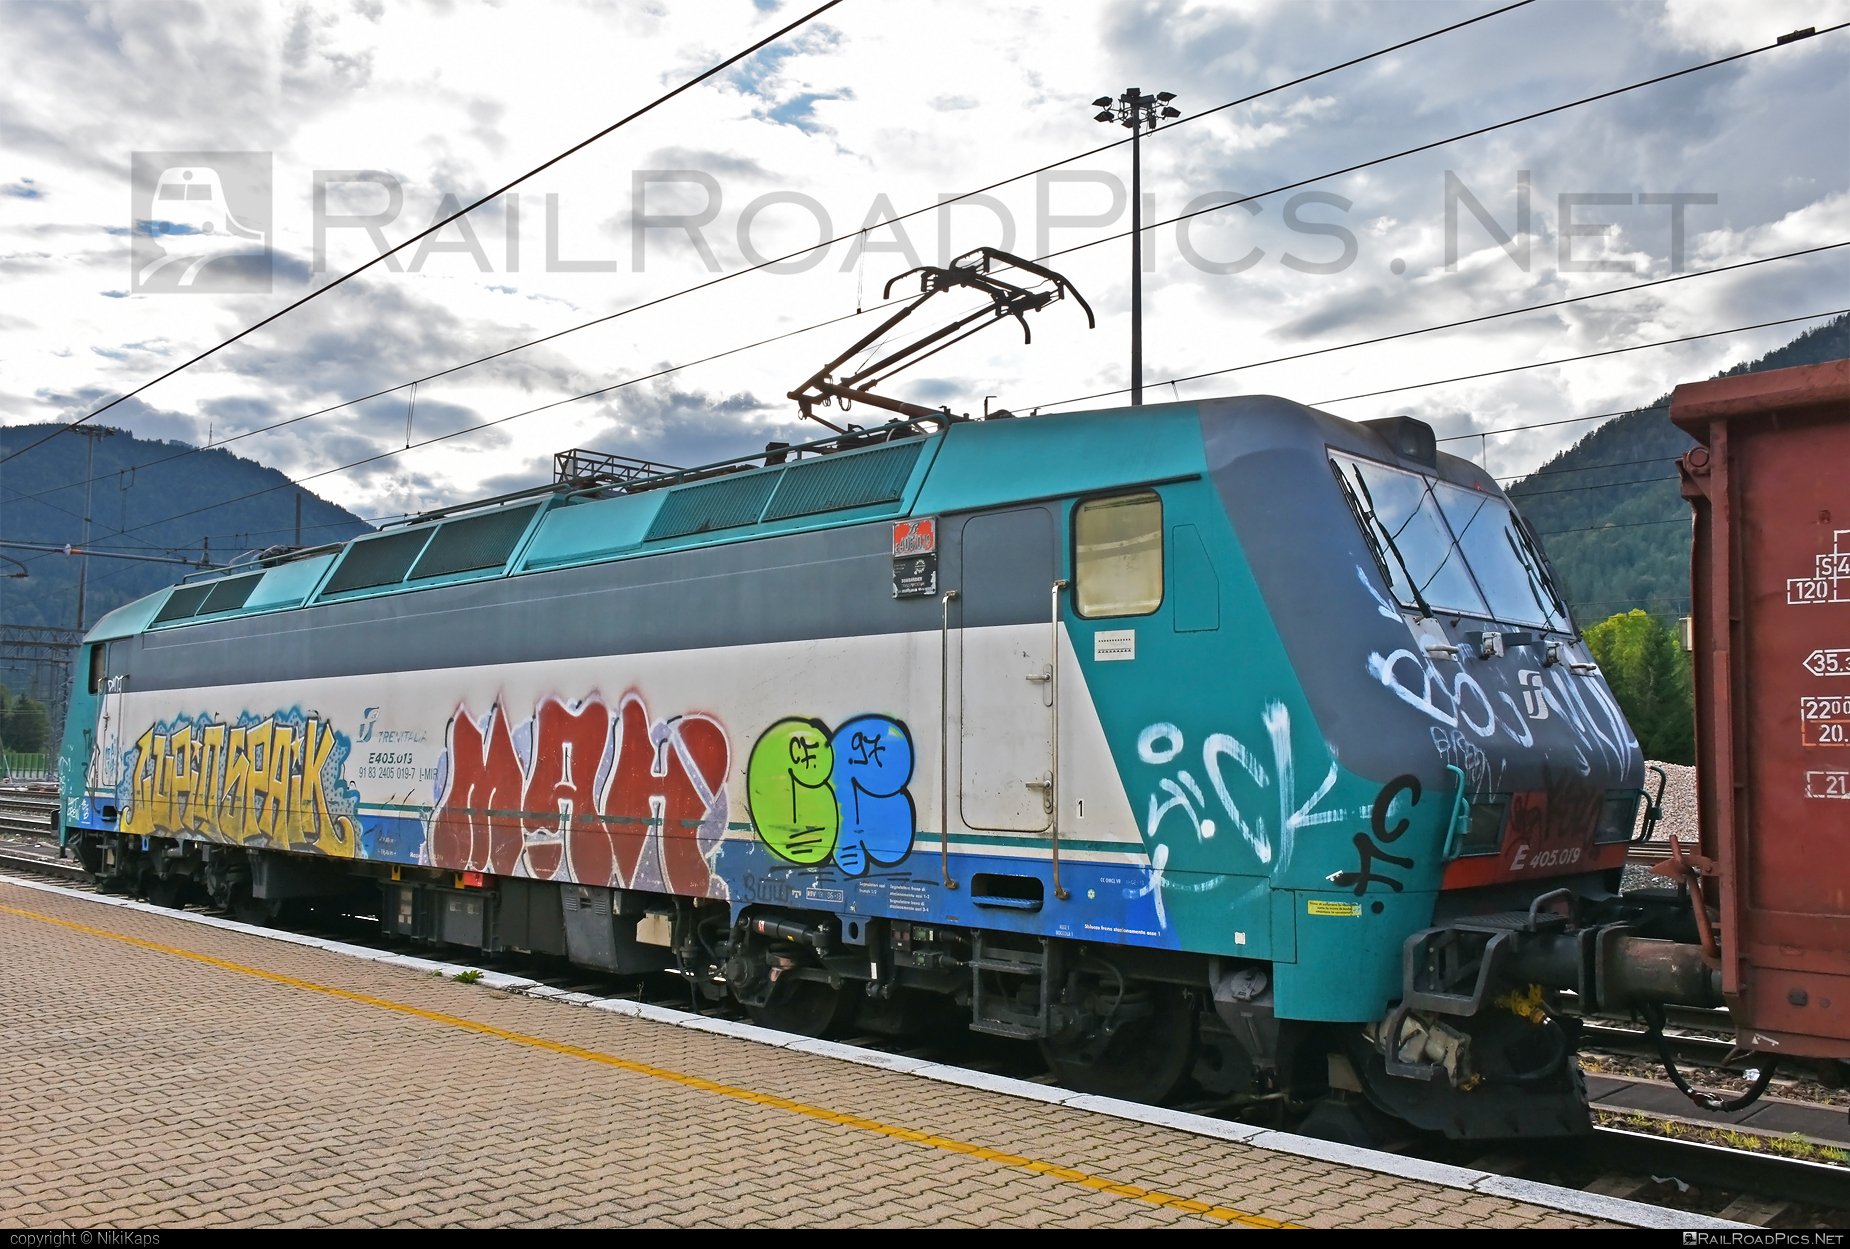 Bombardier Class E.405 - E405.019 operated by Mercitalia Rail S.r.l. #bombardier #bombardierE405 #ferroviedellostato #fs #fsClassE405 #fsitaliane #graffiti #mercitalia